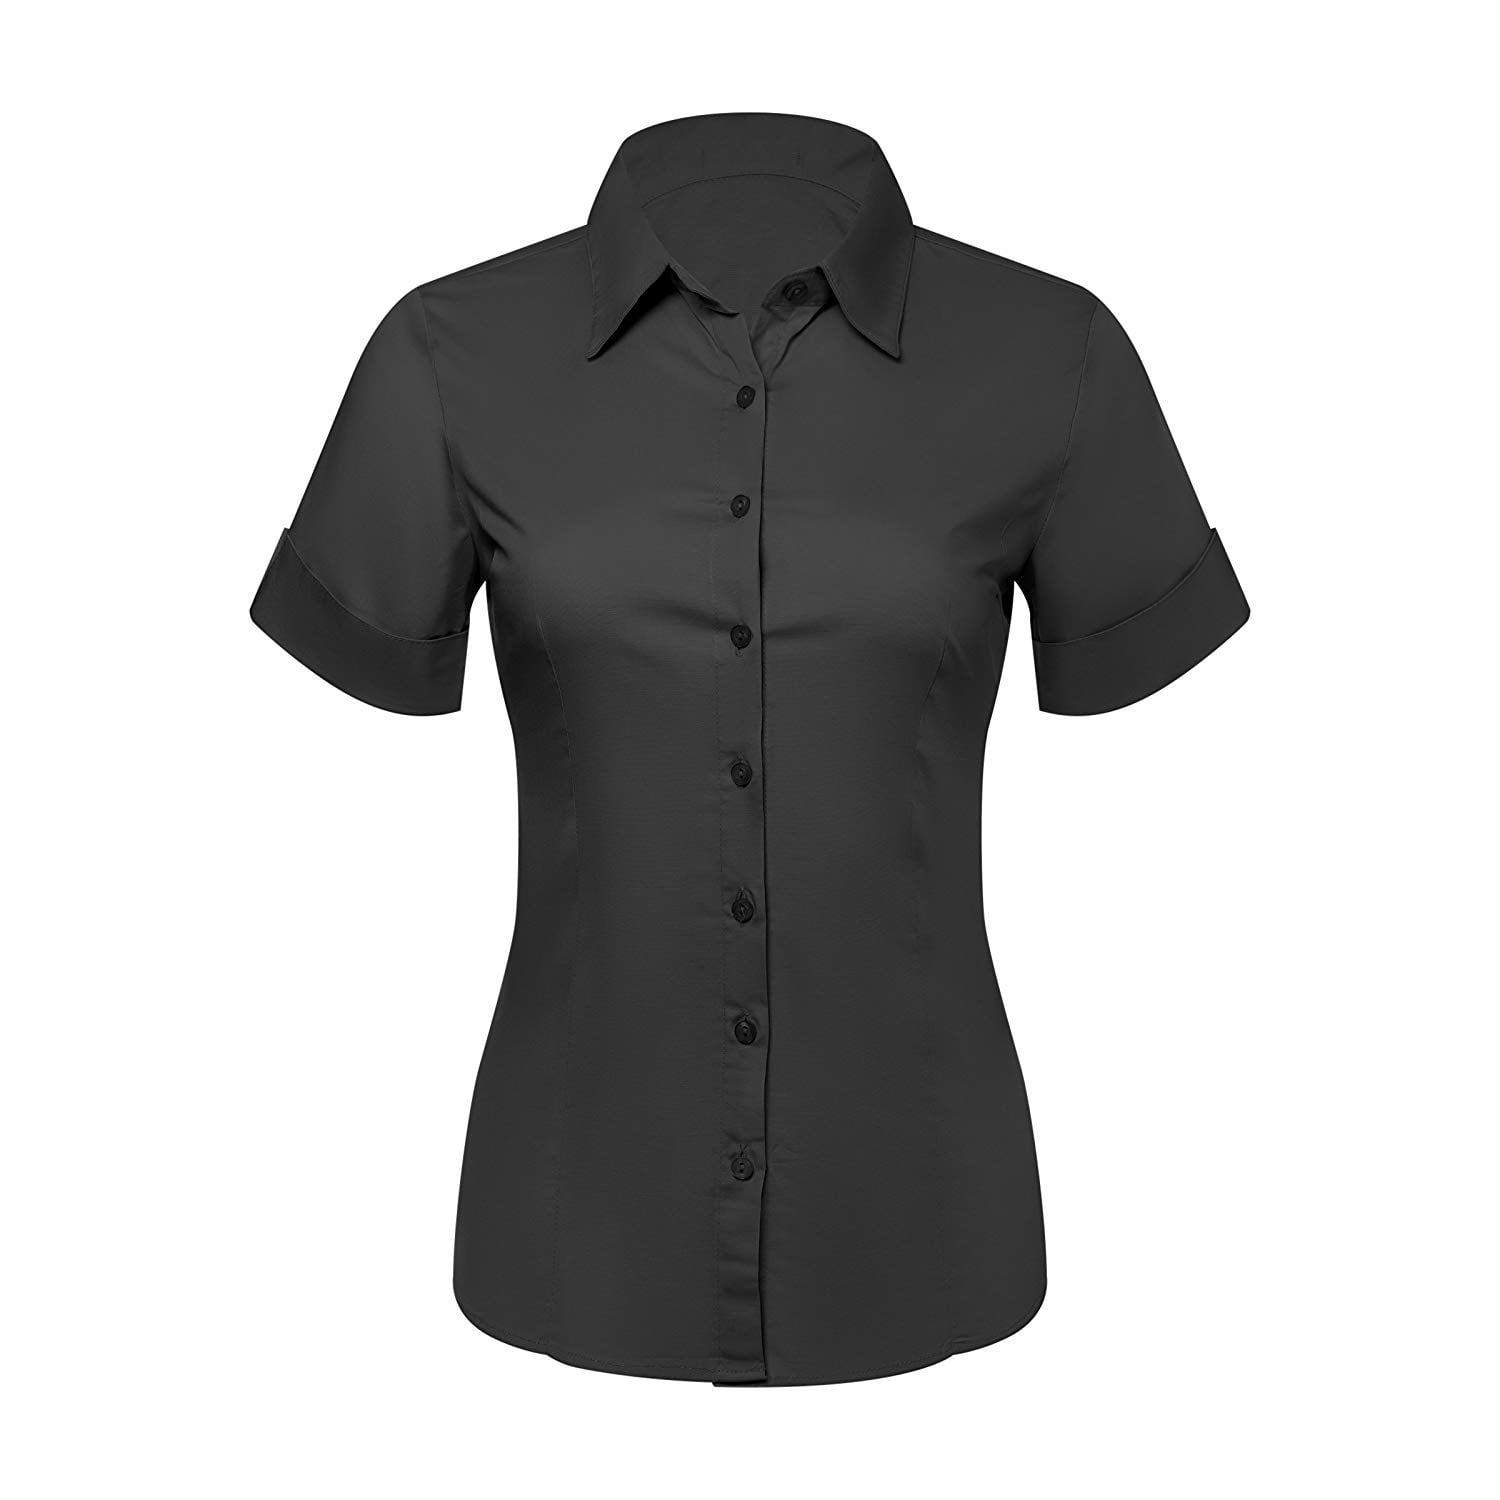 black button up dress shirt womens